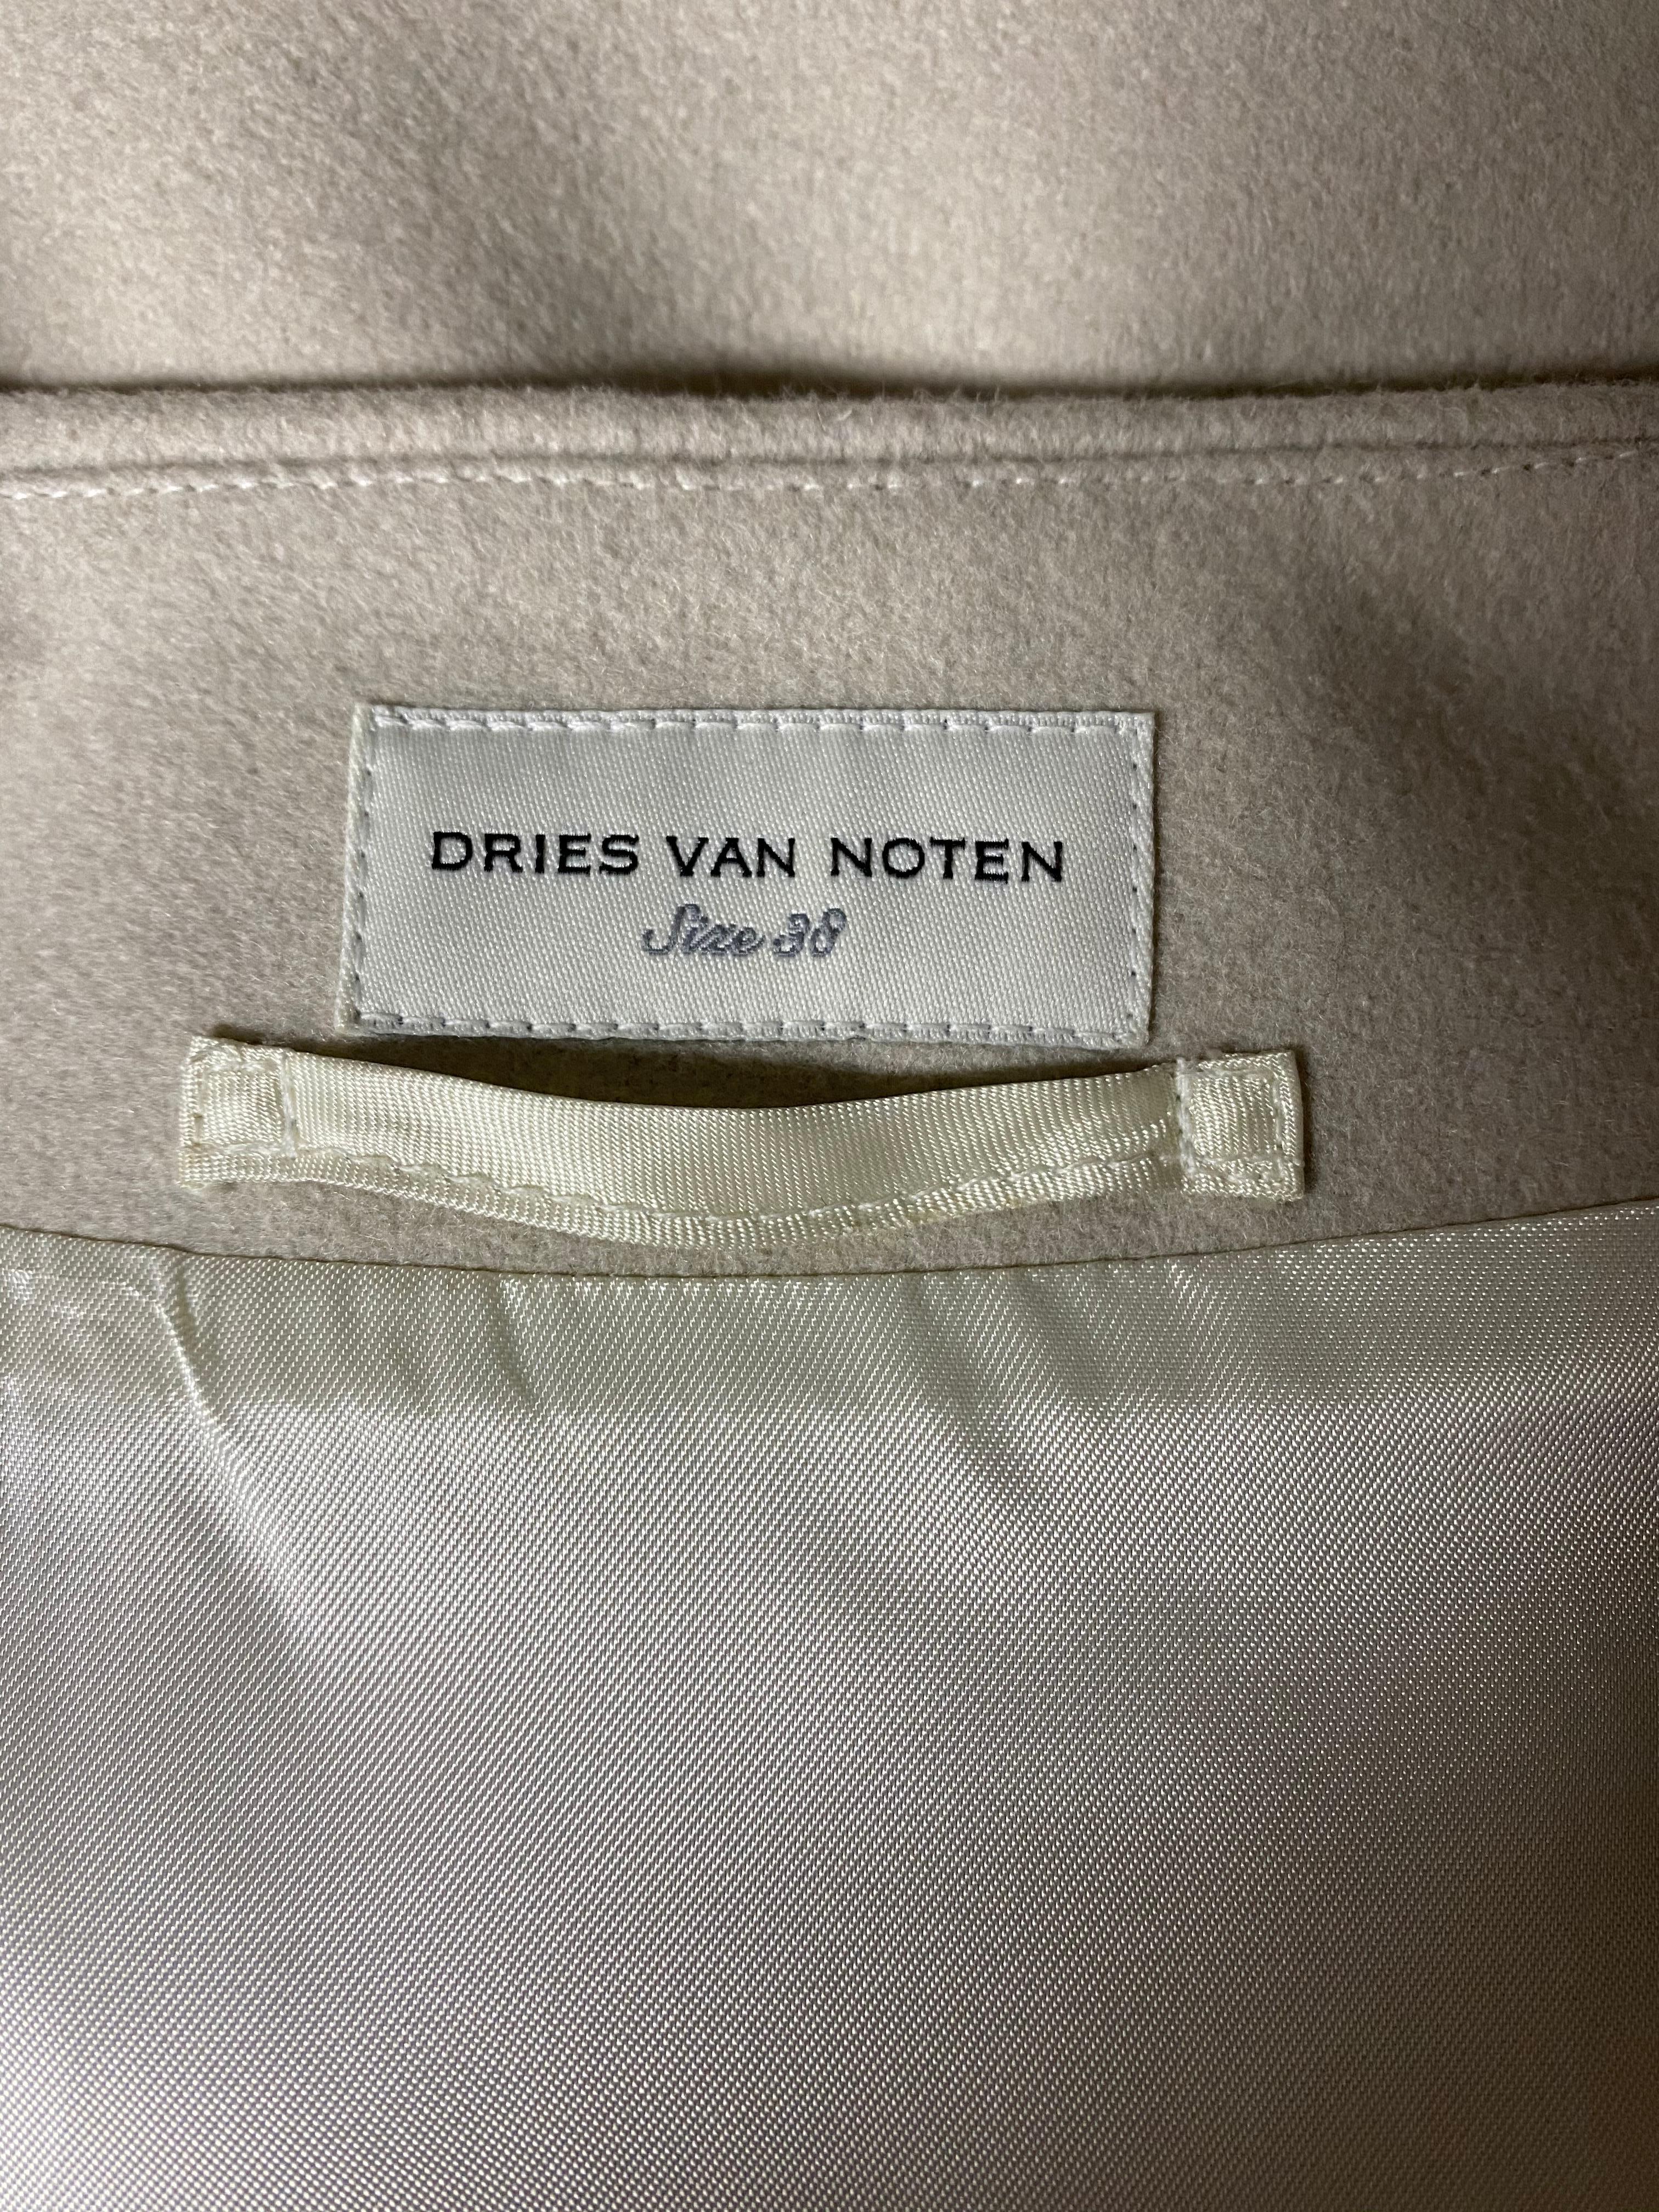 Dries Van Noten Cream Wool Vest with Belt, Size 38 1